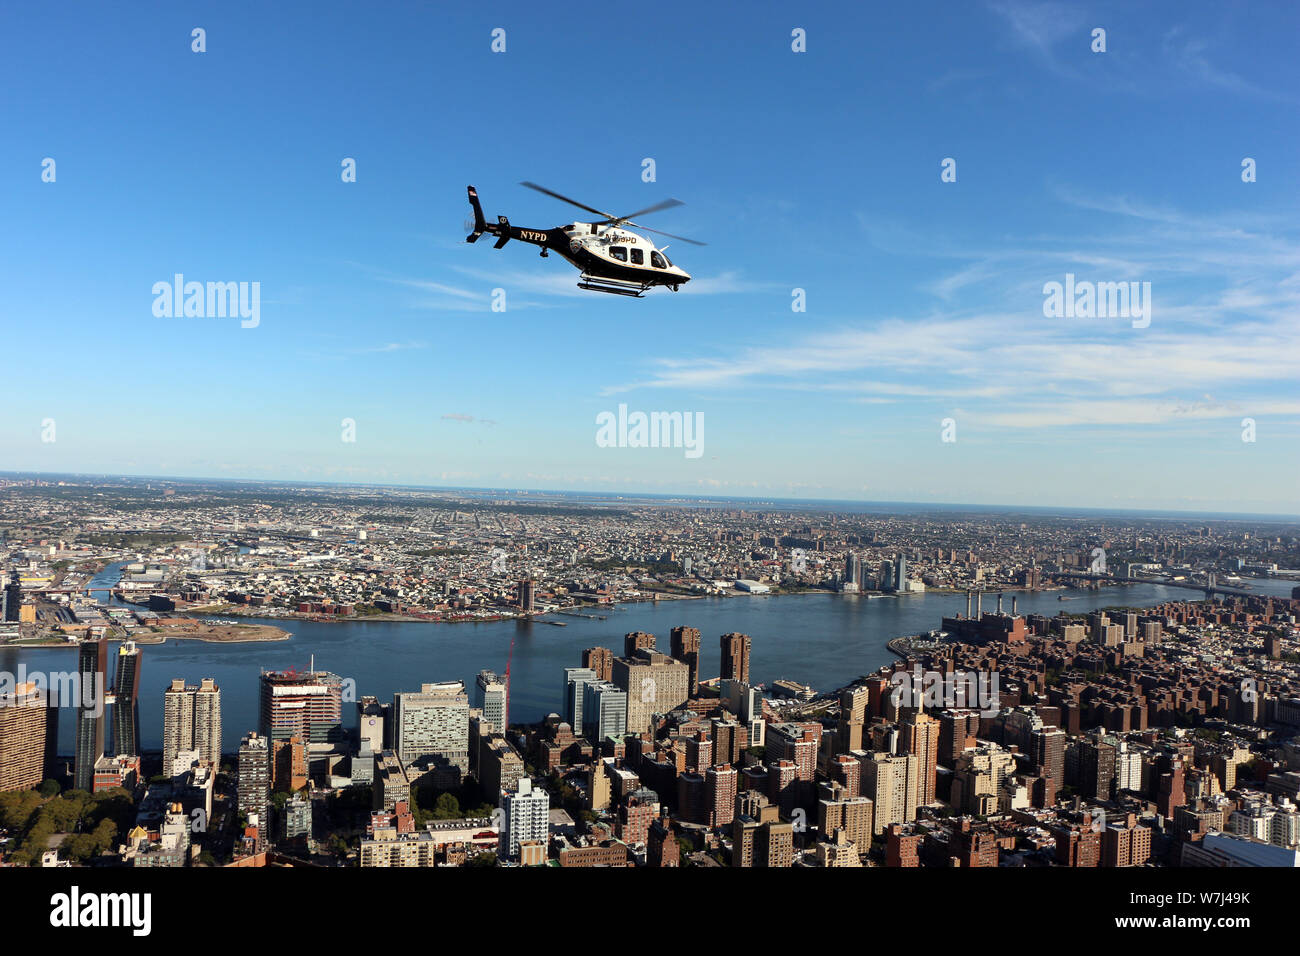 Négliger de l'Empire State Building 82ème étage, observatoire de l'East River et de Brooklyn, avec un hélicoptère de police, 20 West 34th Street, New York, NY 10001 Banque D'Images